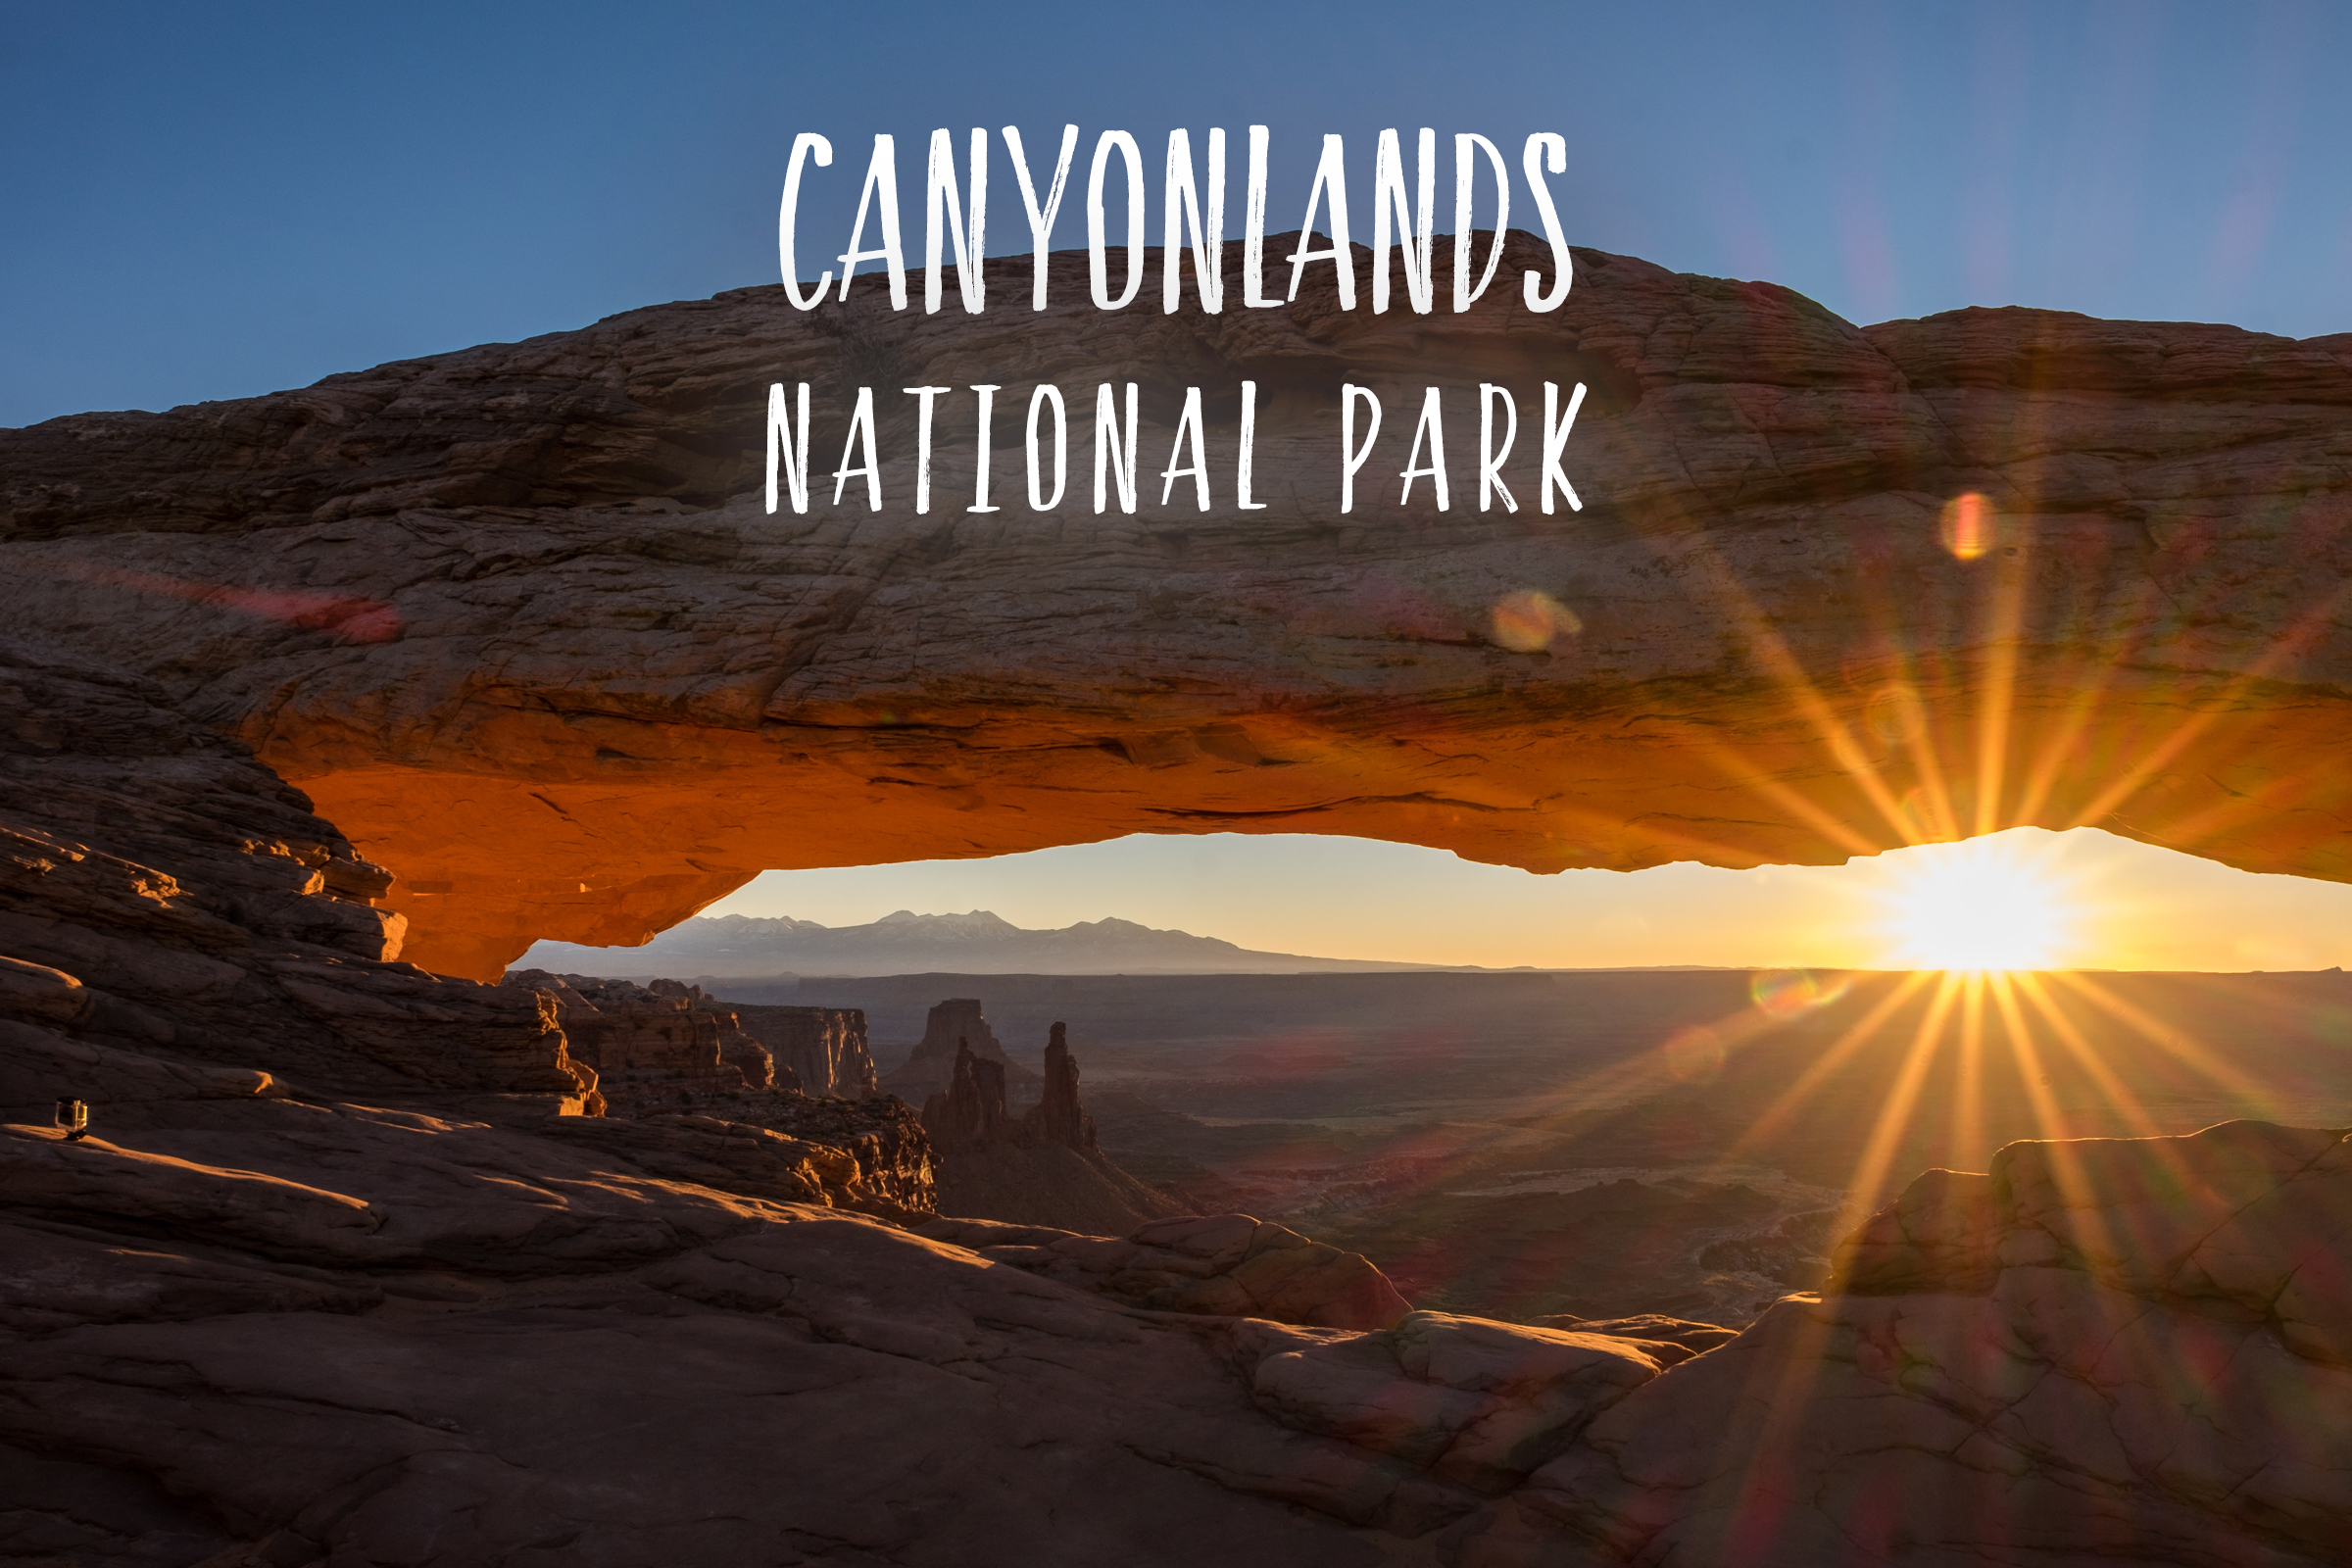 Park 51/59: Canyonlands National Park in Utah